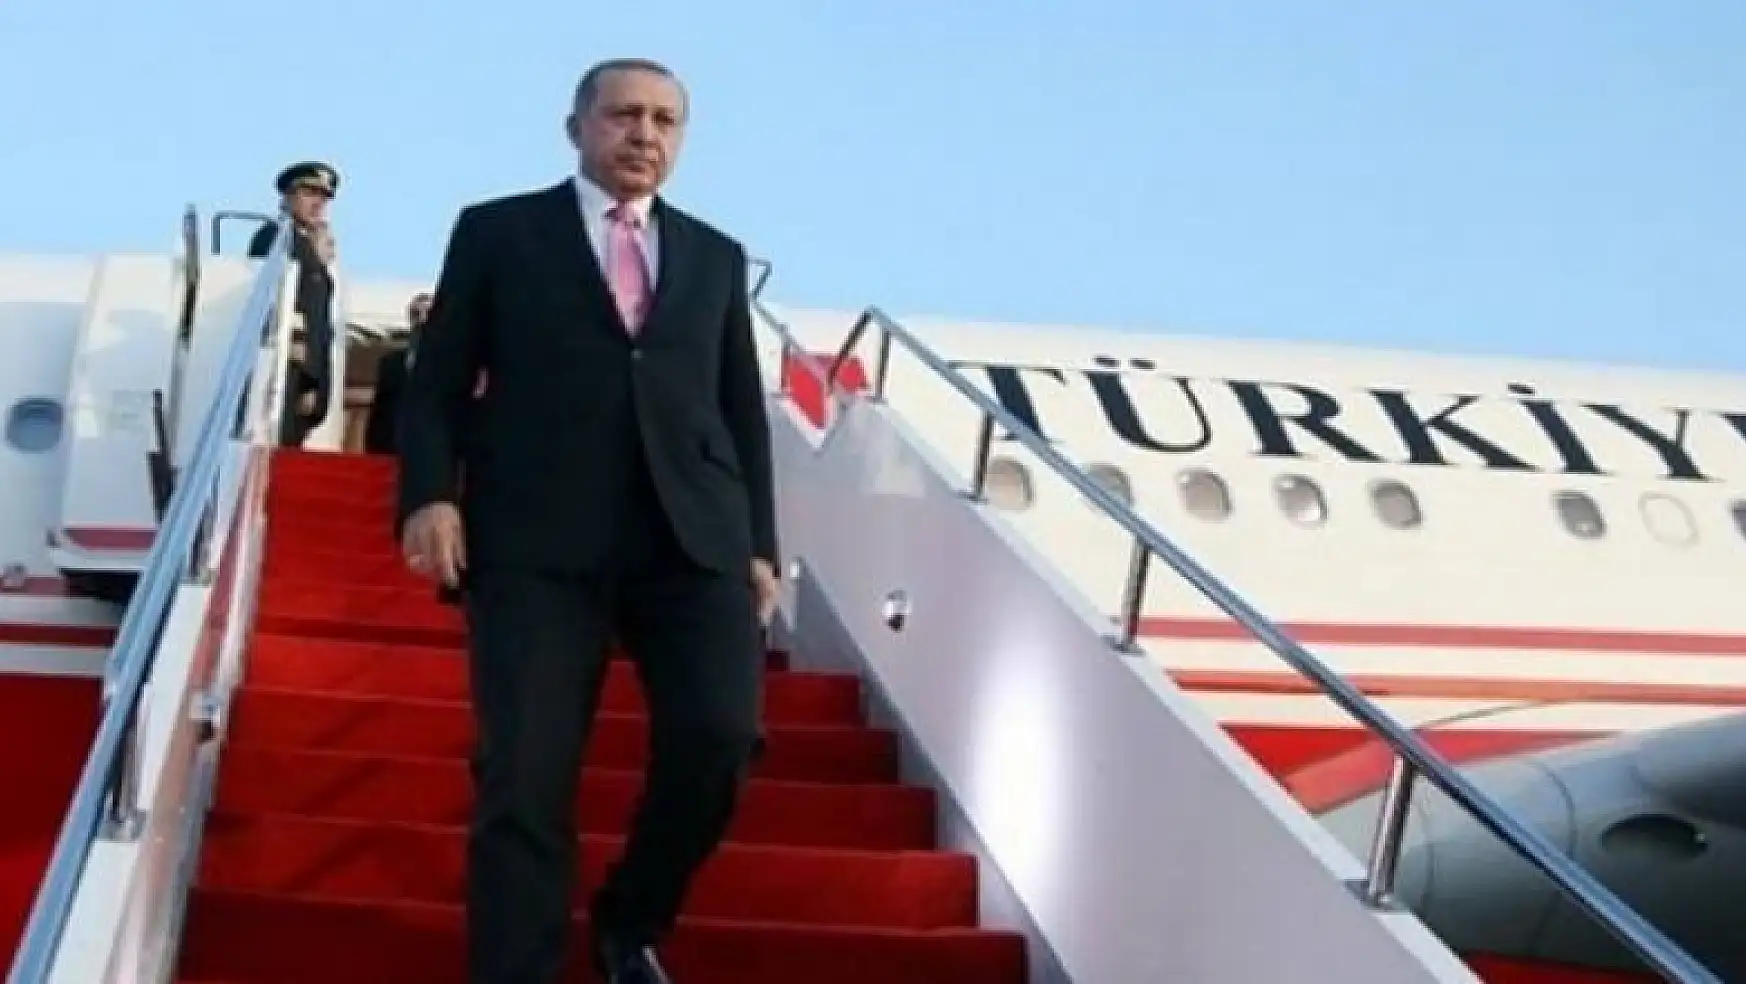 8 yılda 81 ülkeyi ziyaret! Erdoğan'ın en çok ziyaret ettiği ülkeler belli oldu